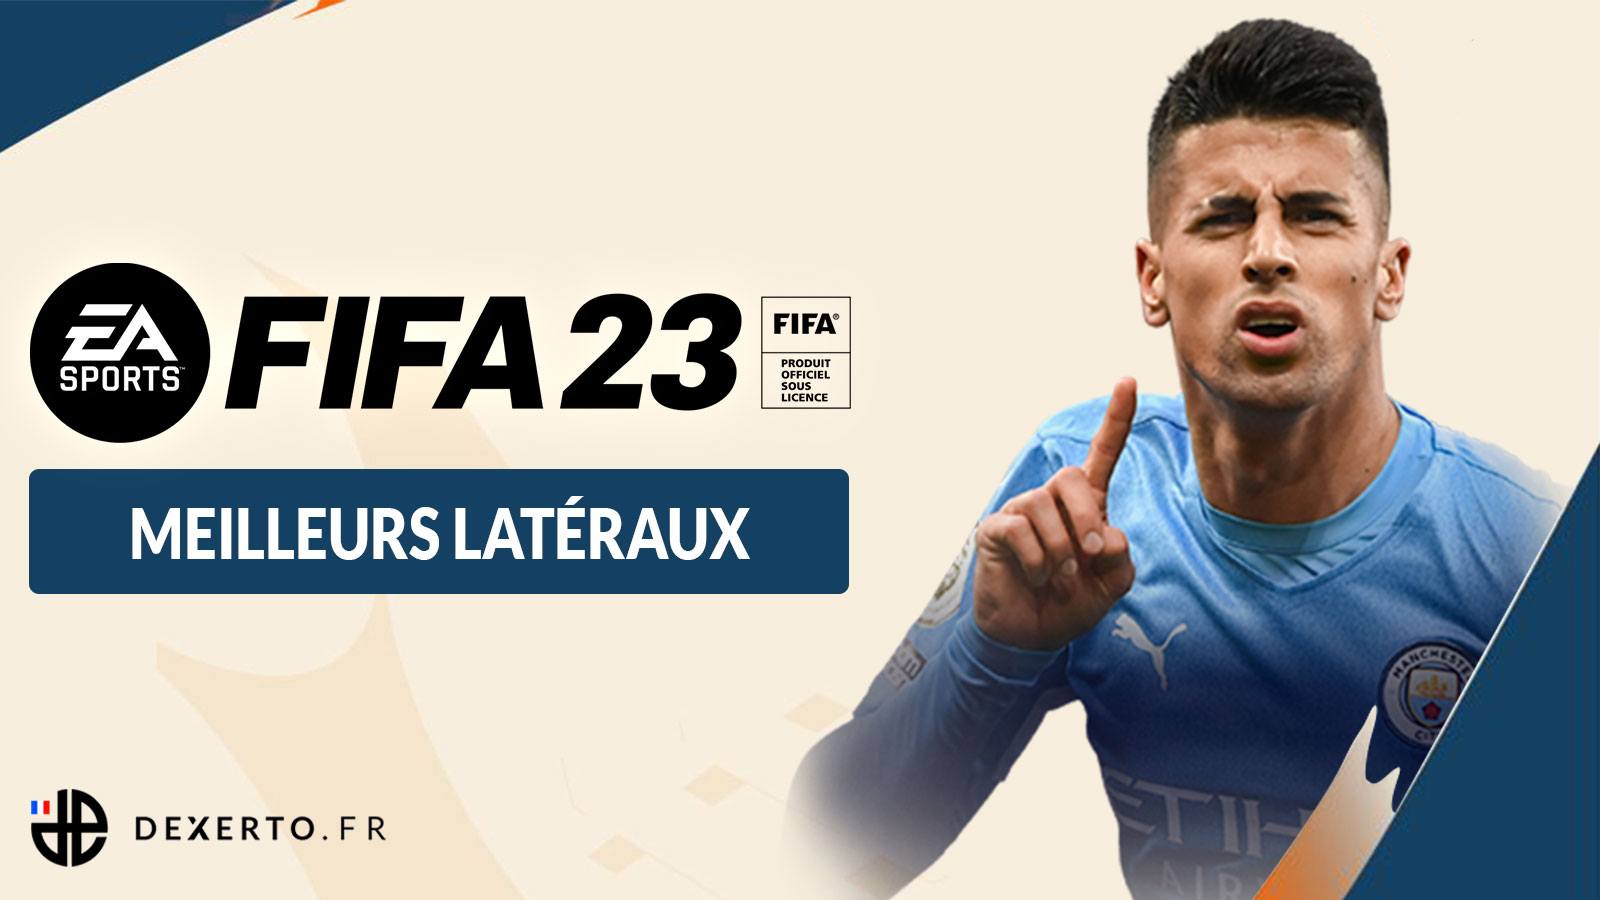 FIFA 23 meilleurs latéraux